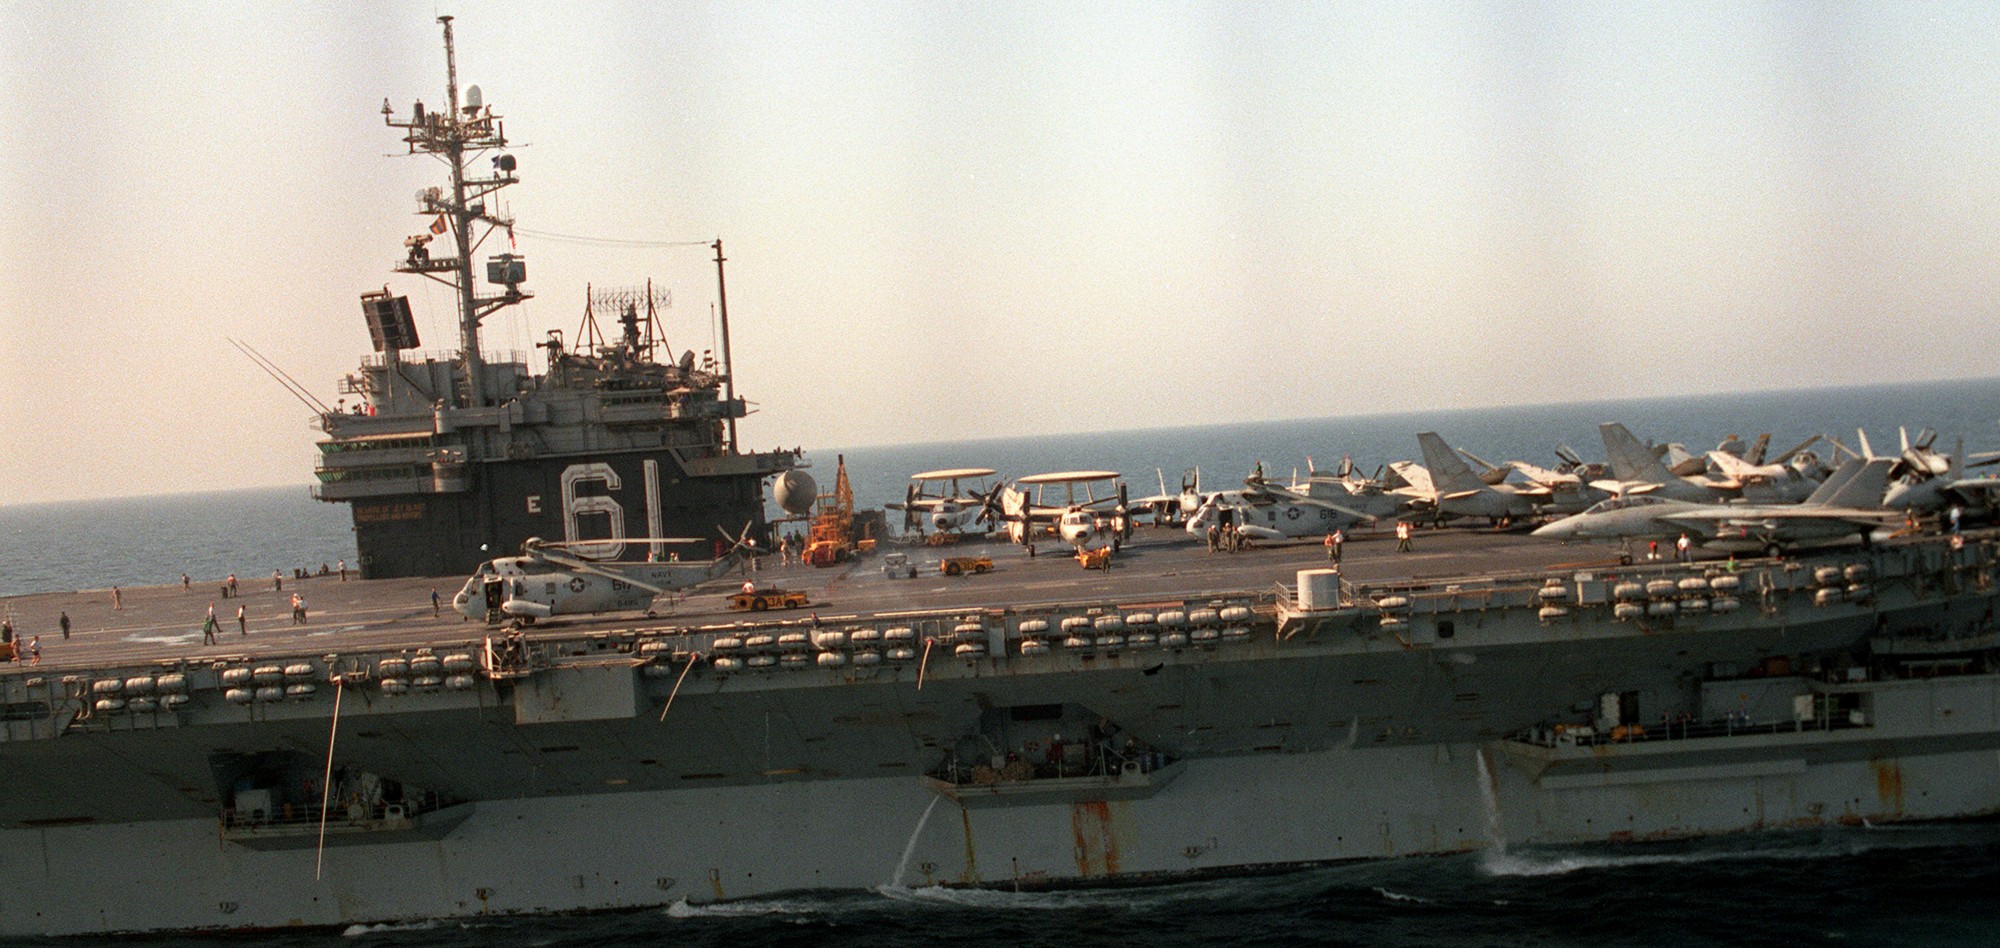 cv-61 uss ranger forrestal class aircraft carrier air wing cvw-2 us navy arabian sea 1992 135